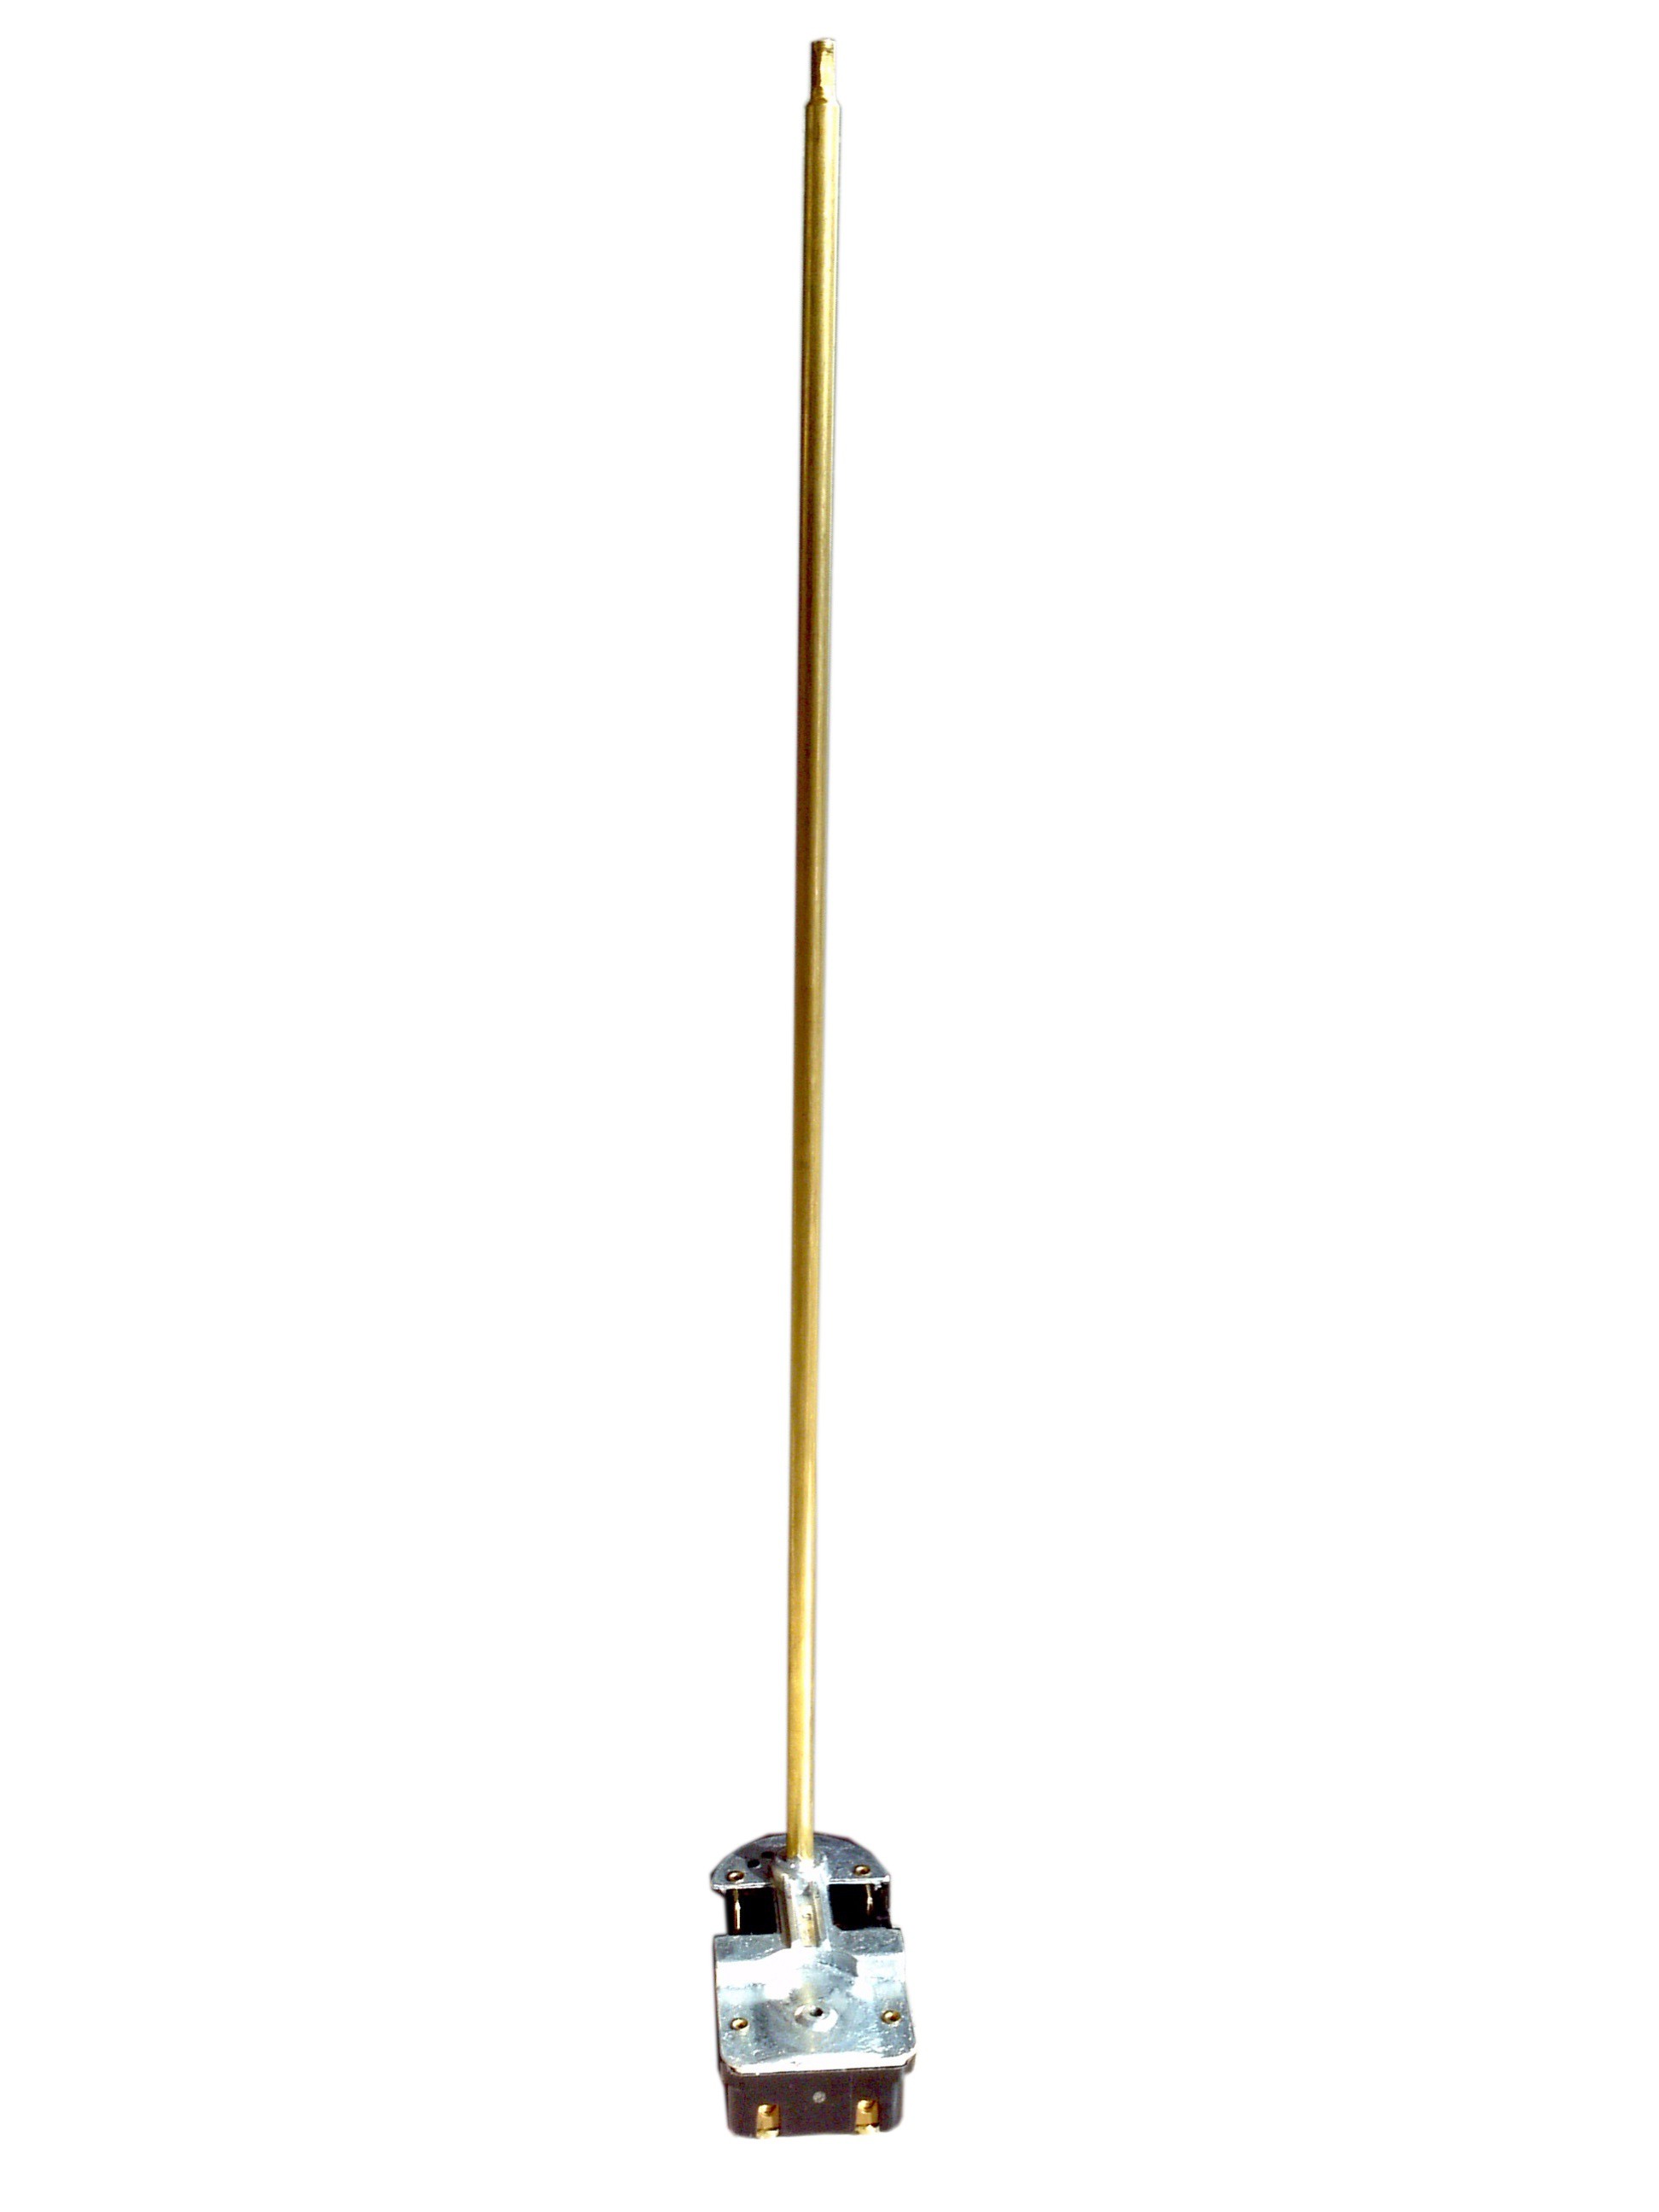 Termostato a innesto TAS 370 - lampadina da 37 cm con piedini